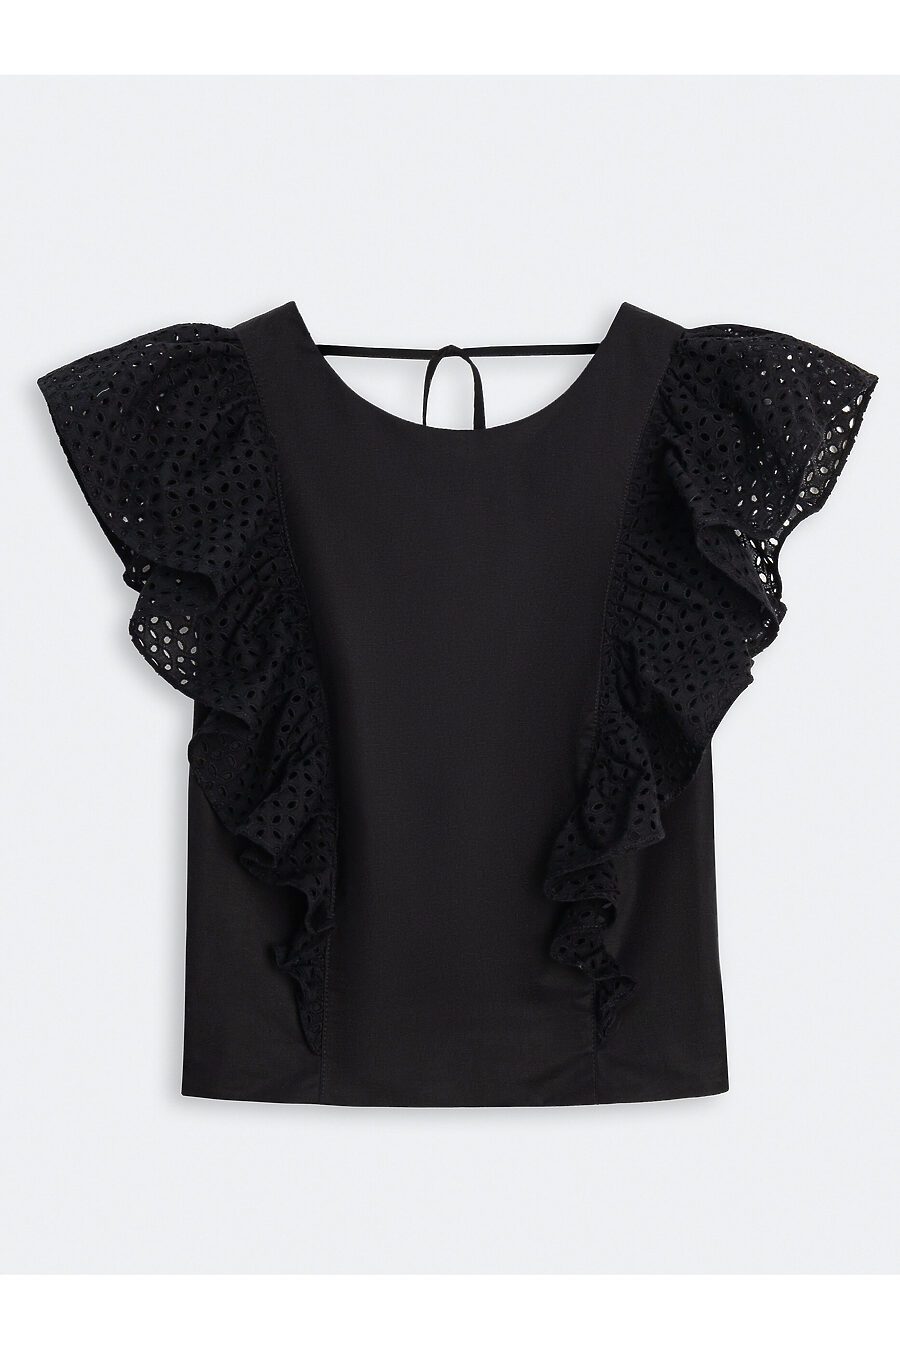 Блуза для женщин CALISTA 785443 купить оптом от производителя. Совместная покупка женской одежды в OptMoyo